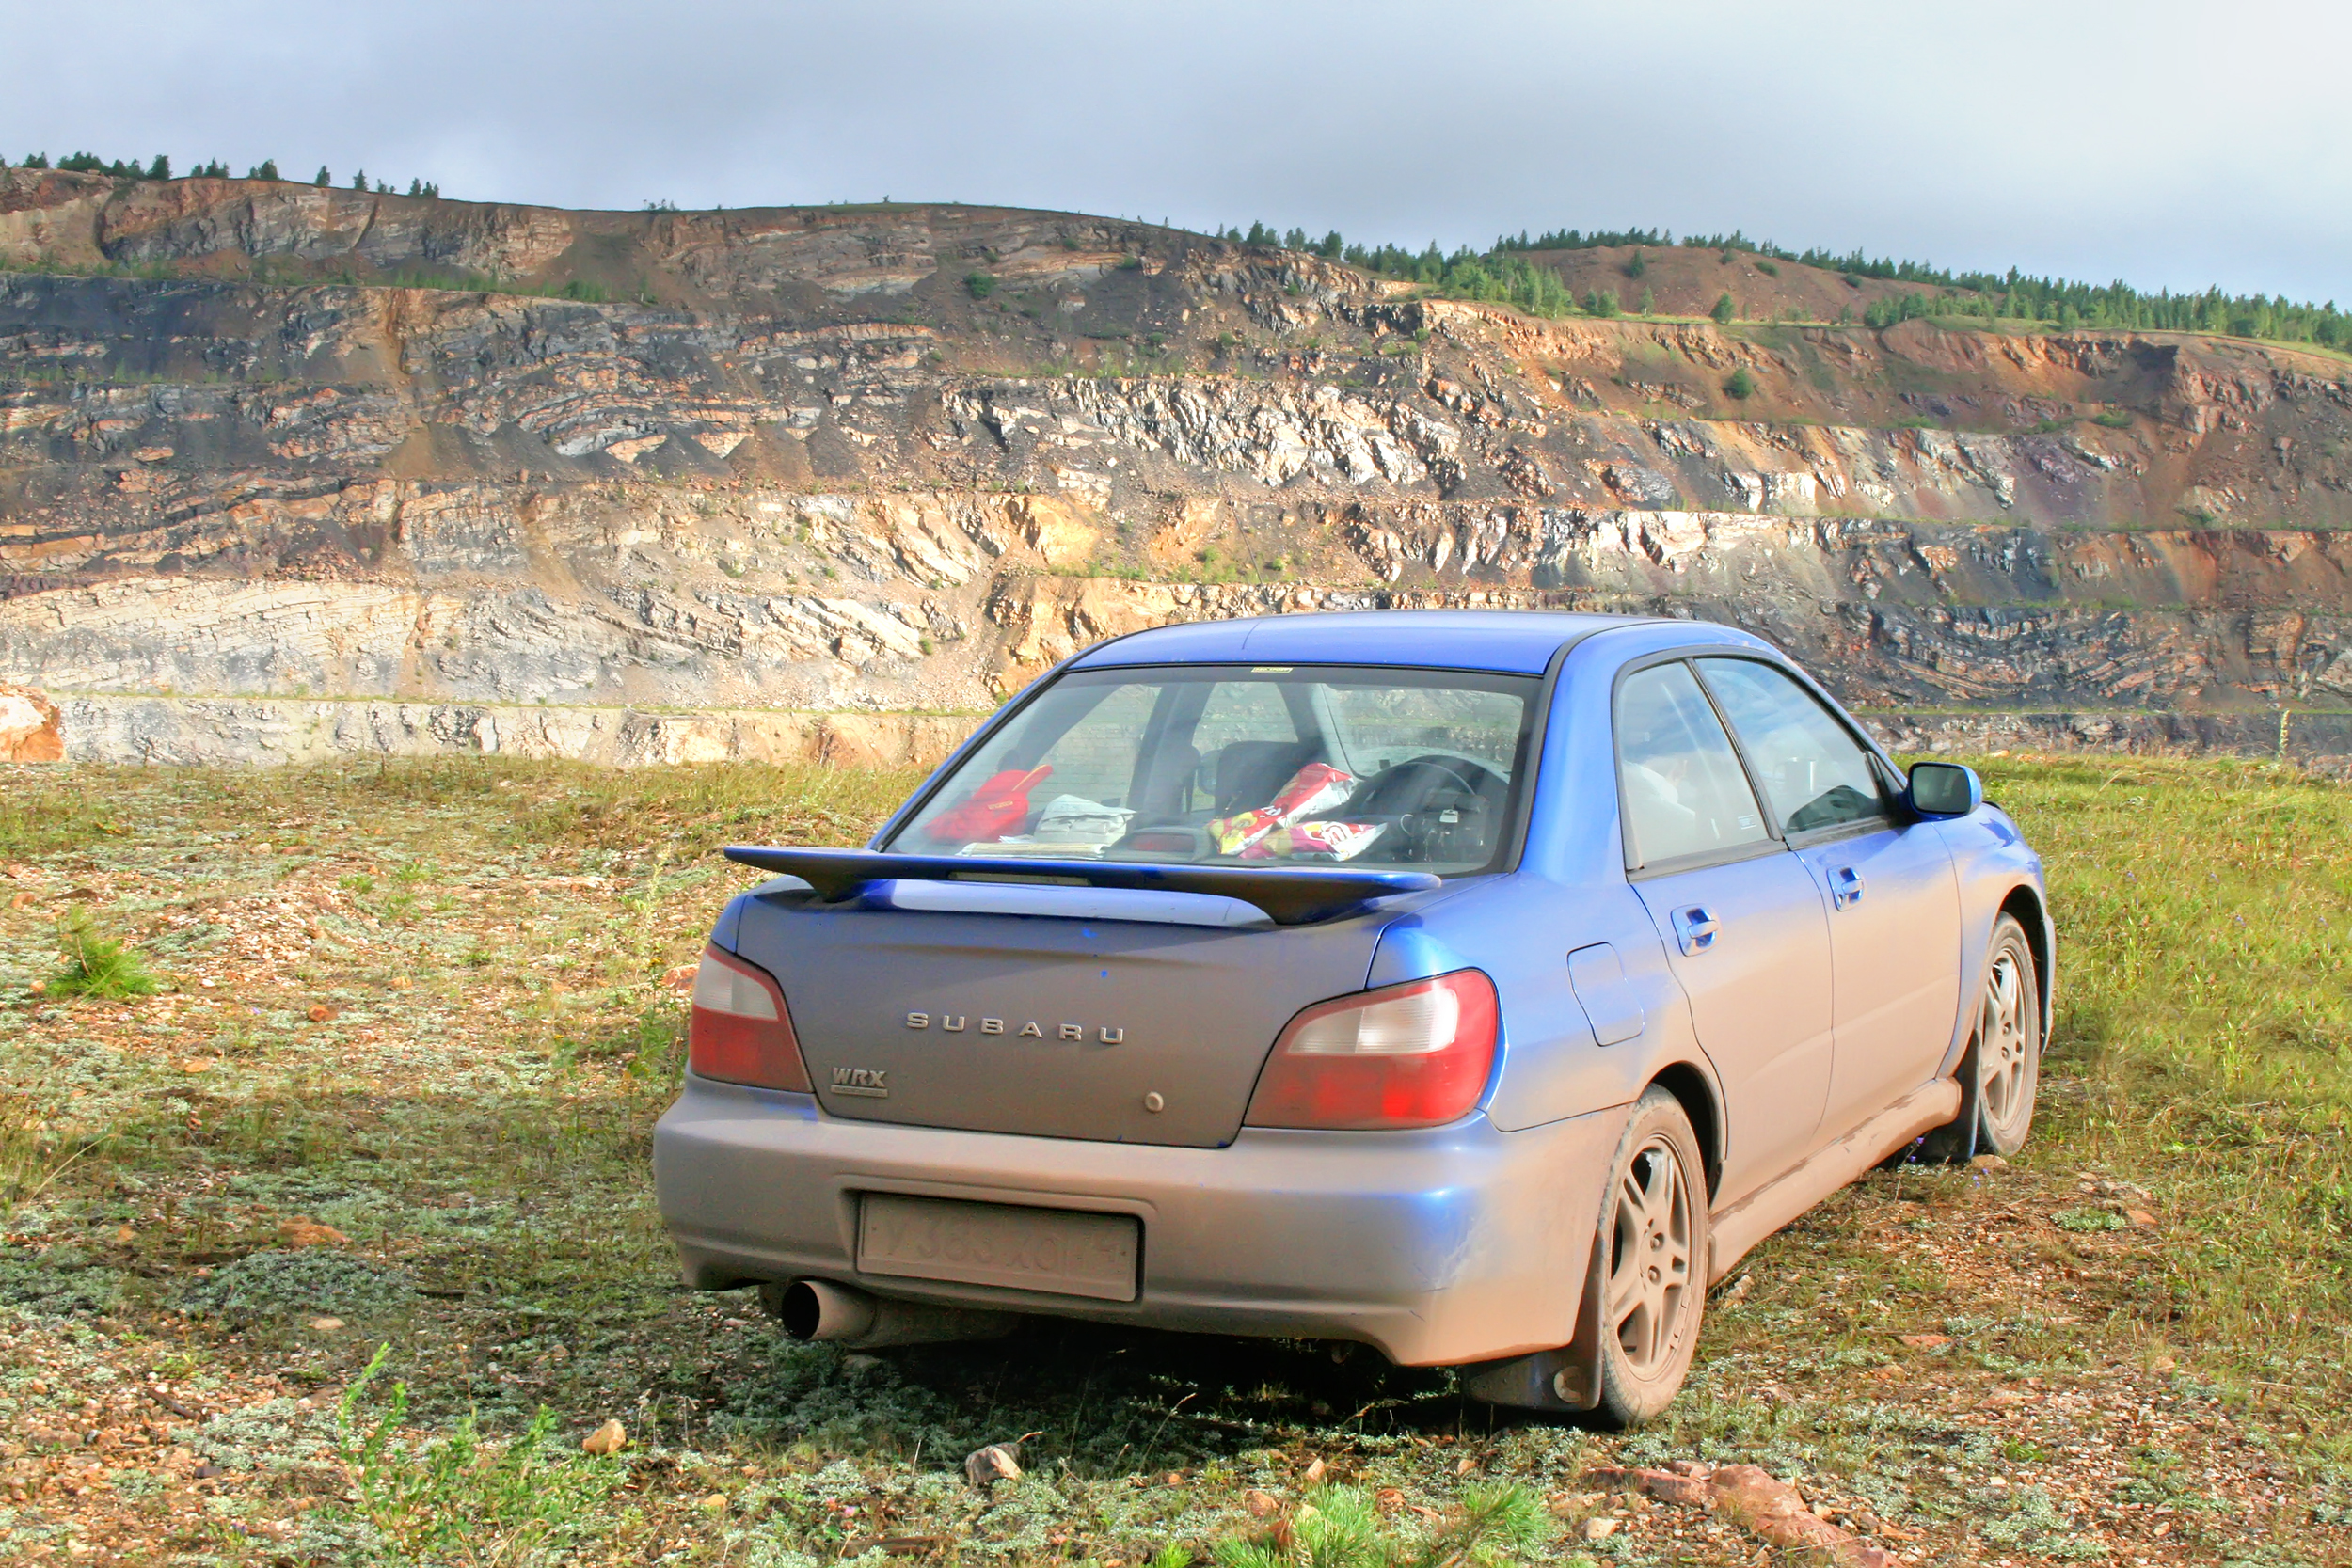 Subaru retires the gas-powered WRX STI while it explores